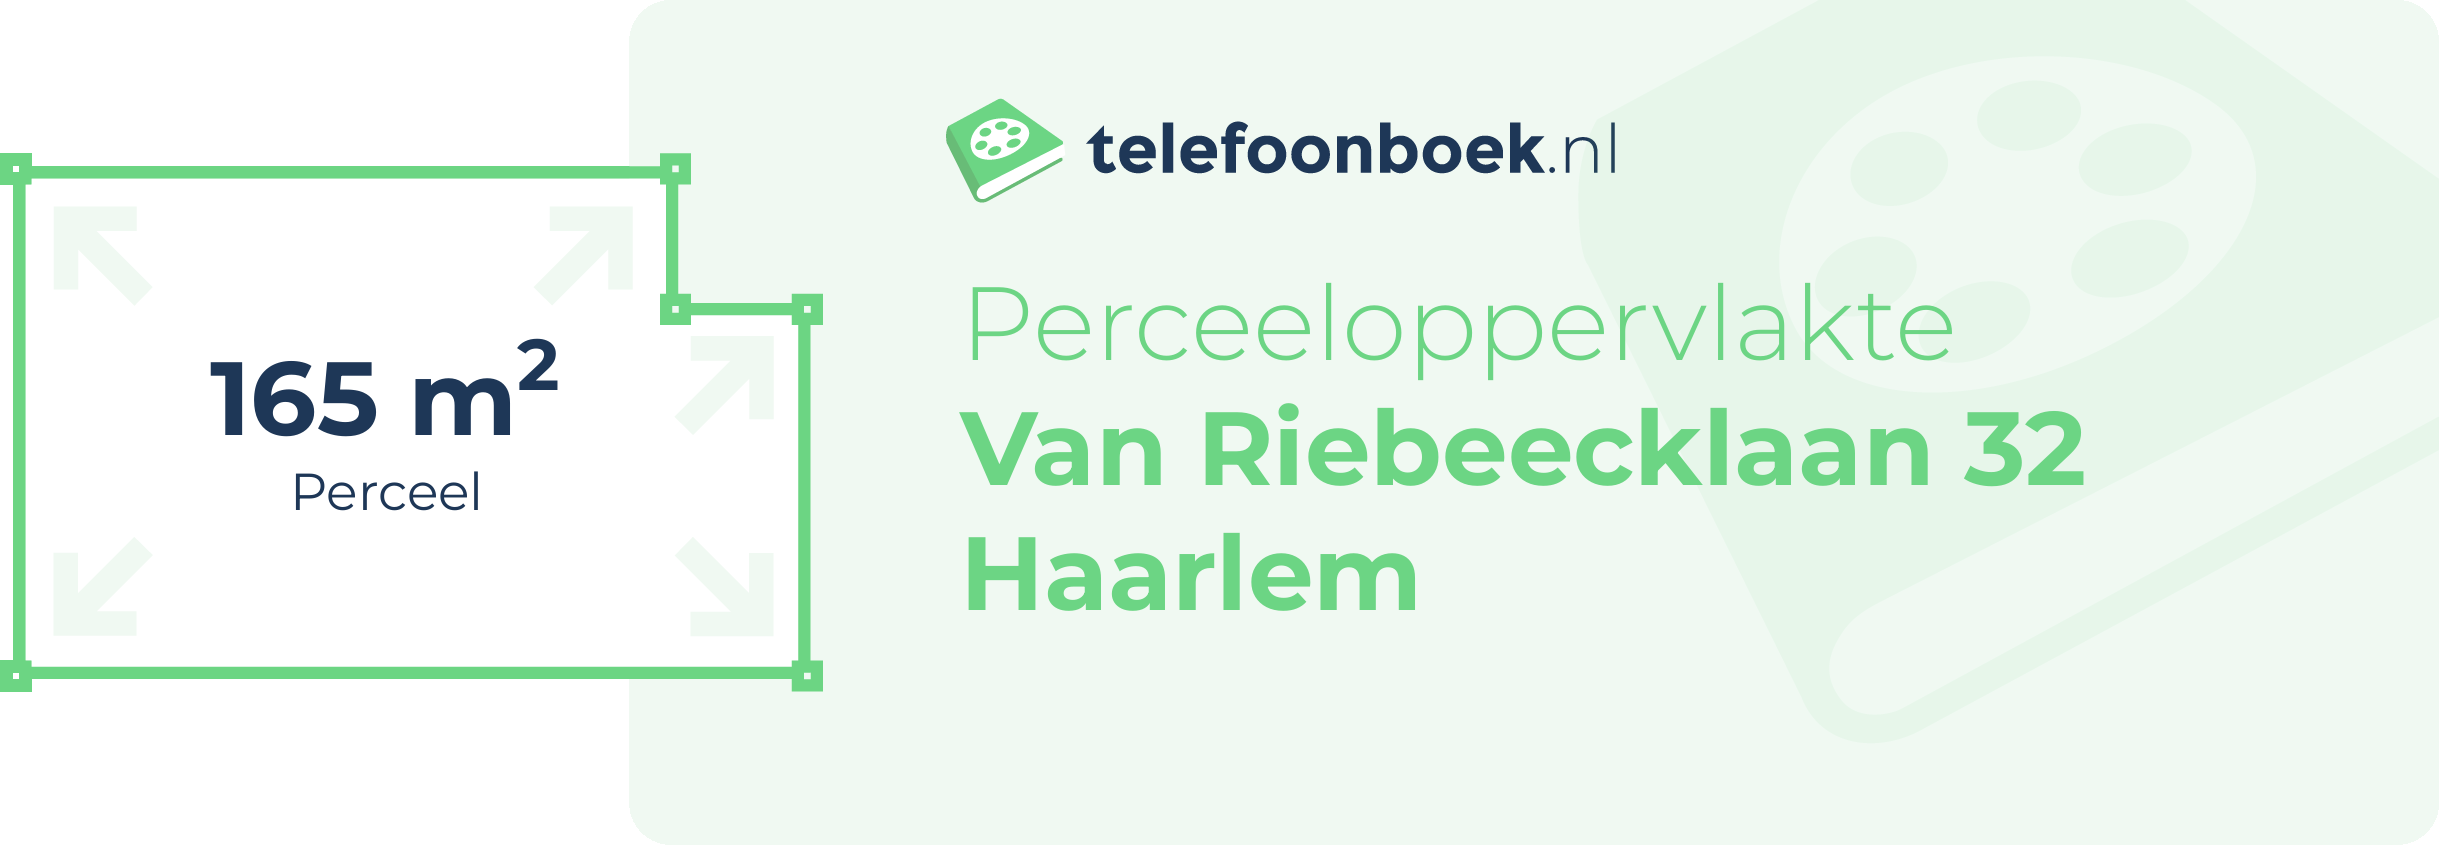 Perceeloppervlakte Van Riebeecklaan 32 Haarlem